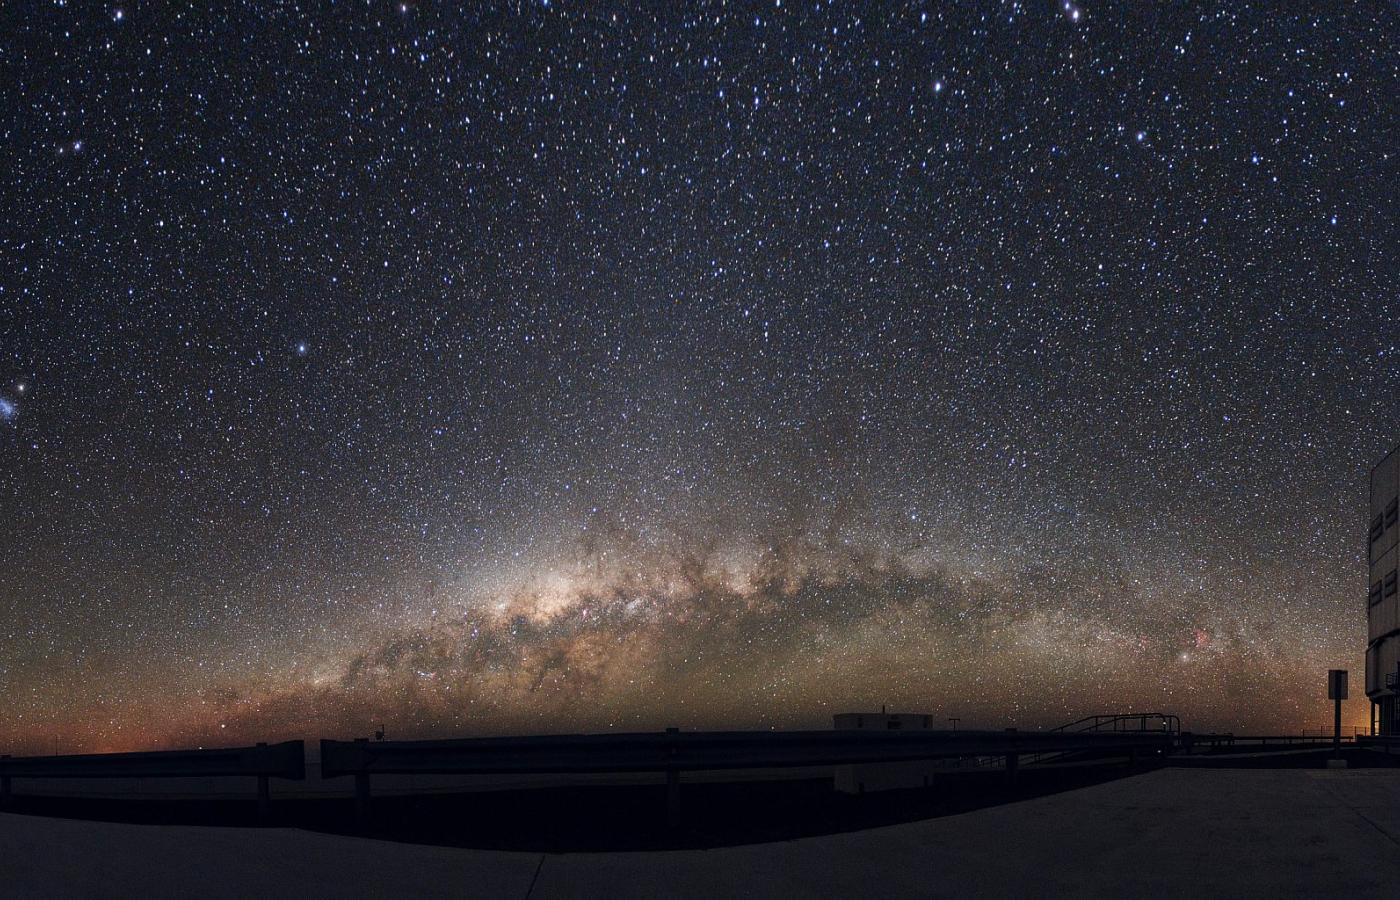 Wielki i Mały Obłok Magellana. Wielki leży bliżej niż Mały. Masa Wielkiego to 20 miliardów Słońc. Małego to kilkaset milionów. Zdjęcie pochodzi z okolicy teleskopu VLT na Atakamie w Chile.